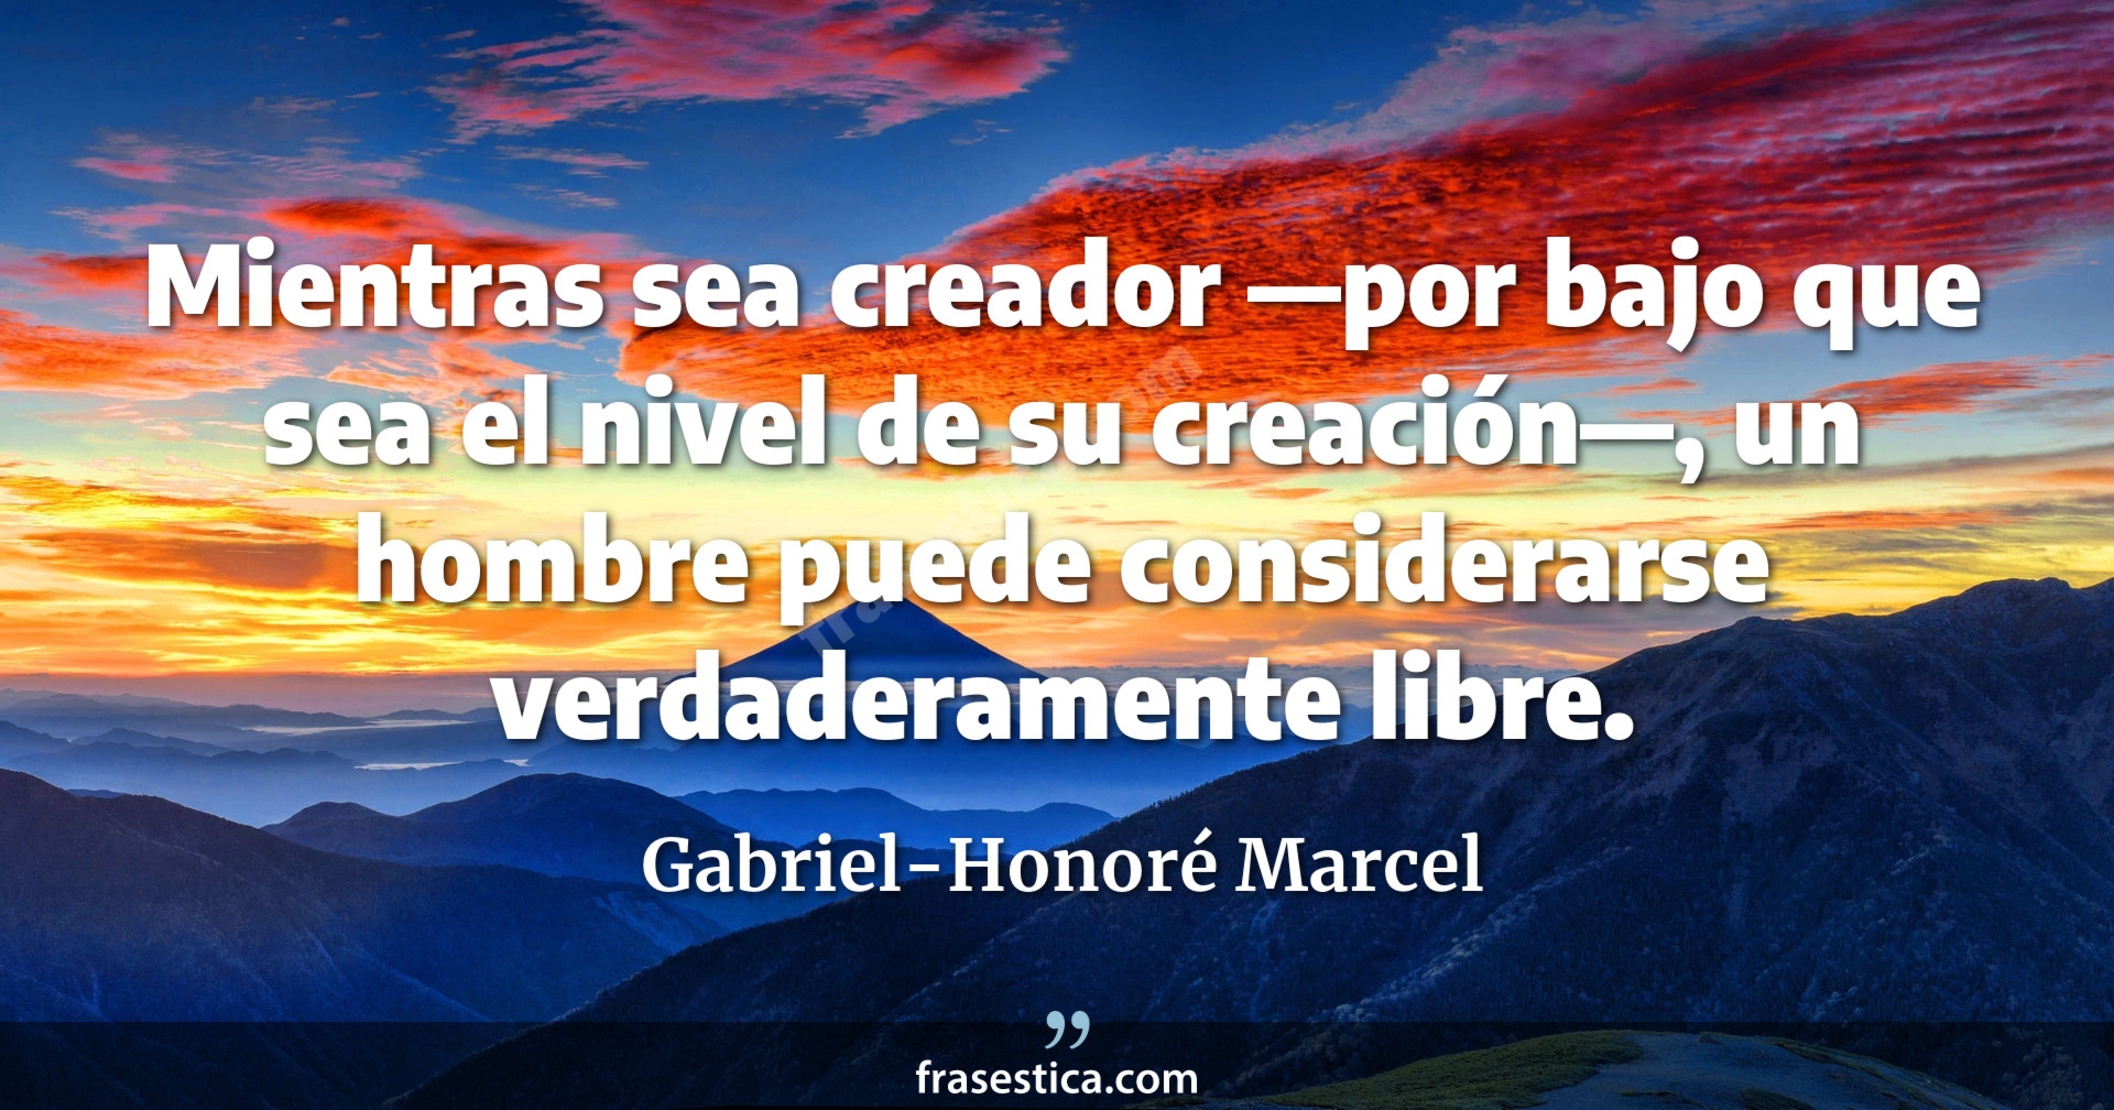 Mientras sea creador —por bajo que sea el nivel de su creación—, un hombre puede considerarse verdaderamente libre. - Gabriel-Honoré Marcel